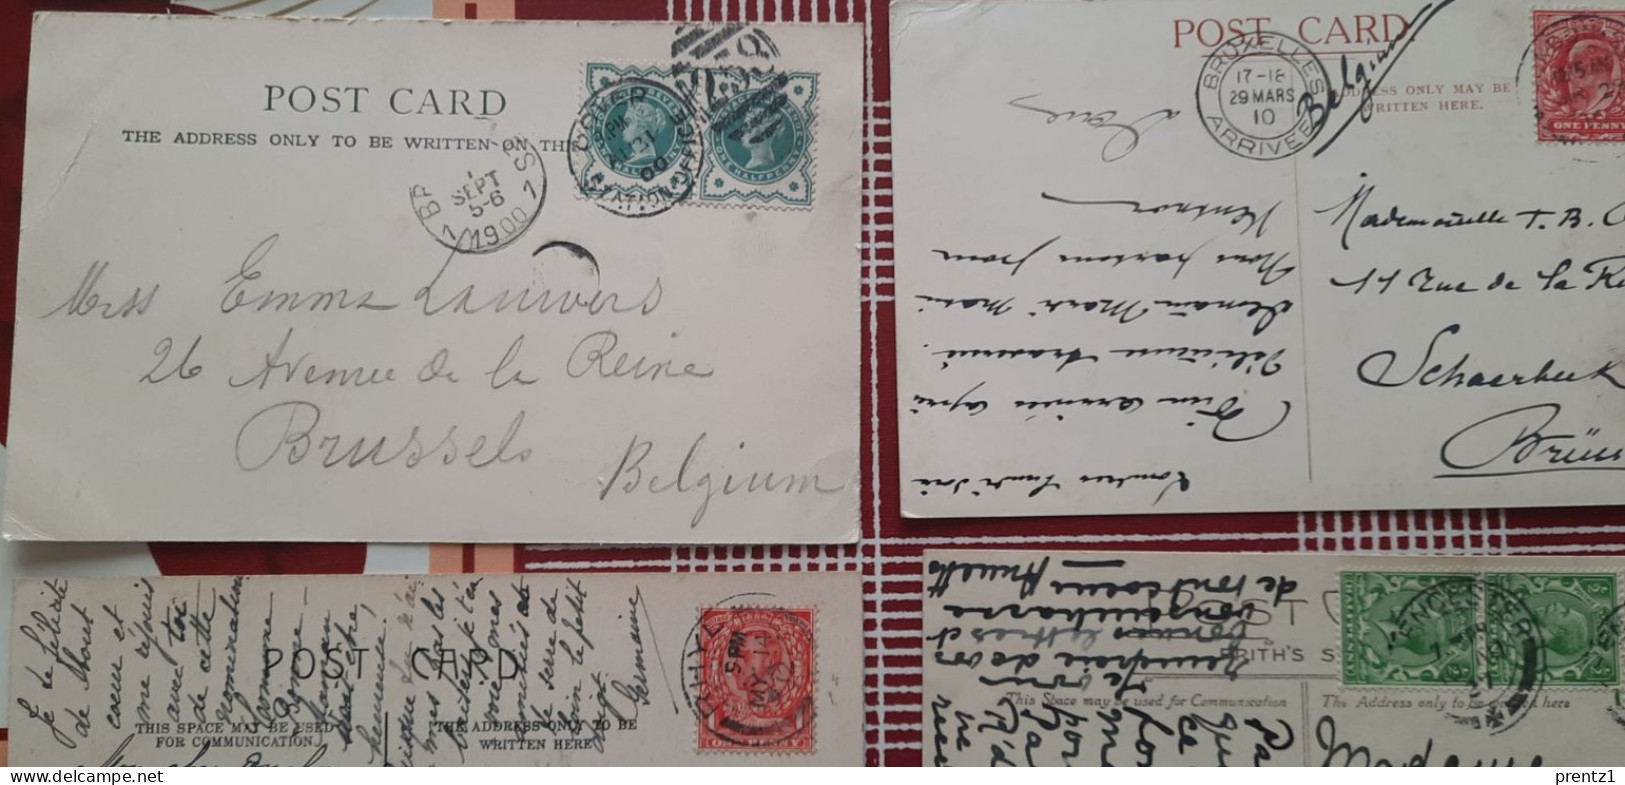 16 oude Postkaarten (CPA)  van Londen /London met speciale postzegels , verschillende gebouwen ,London on Fire,Bridge,..